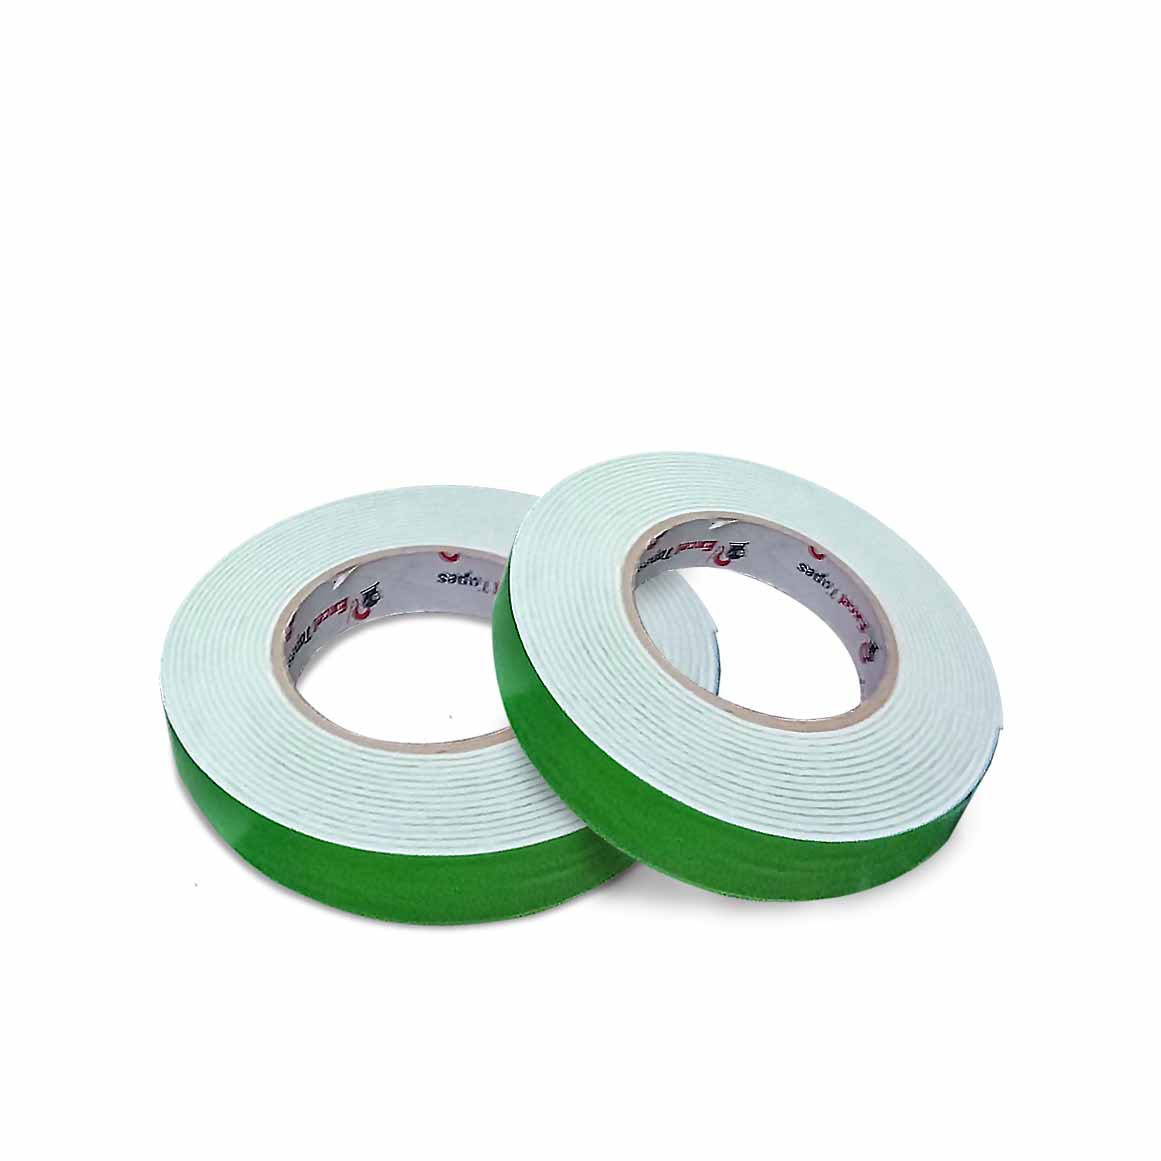 Tape  Double Sided Foam Tape - Packaging Depot Manila